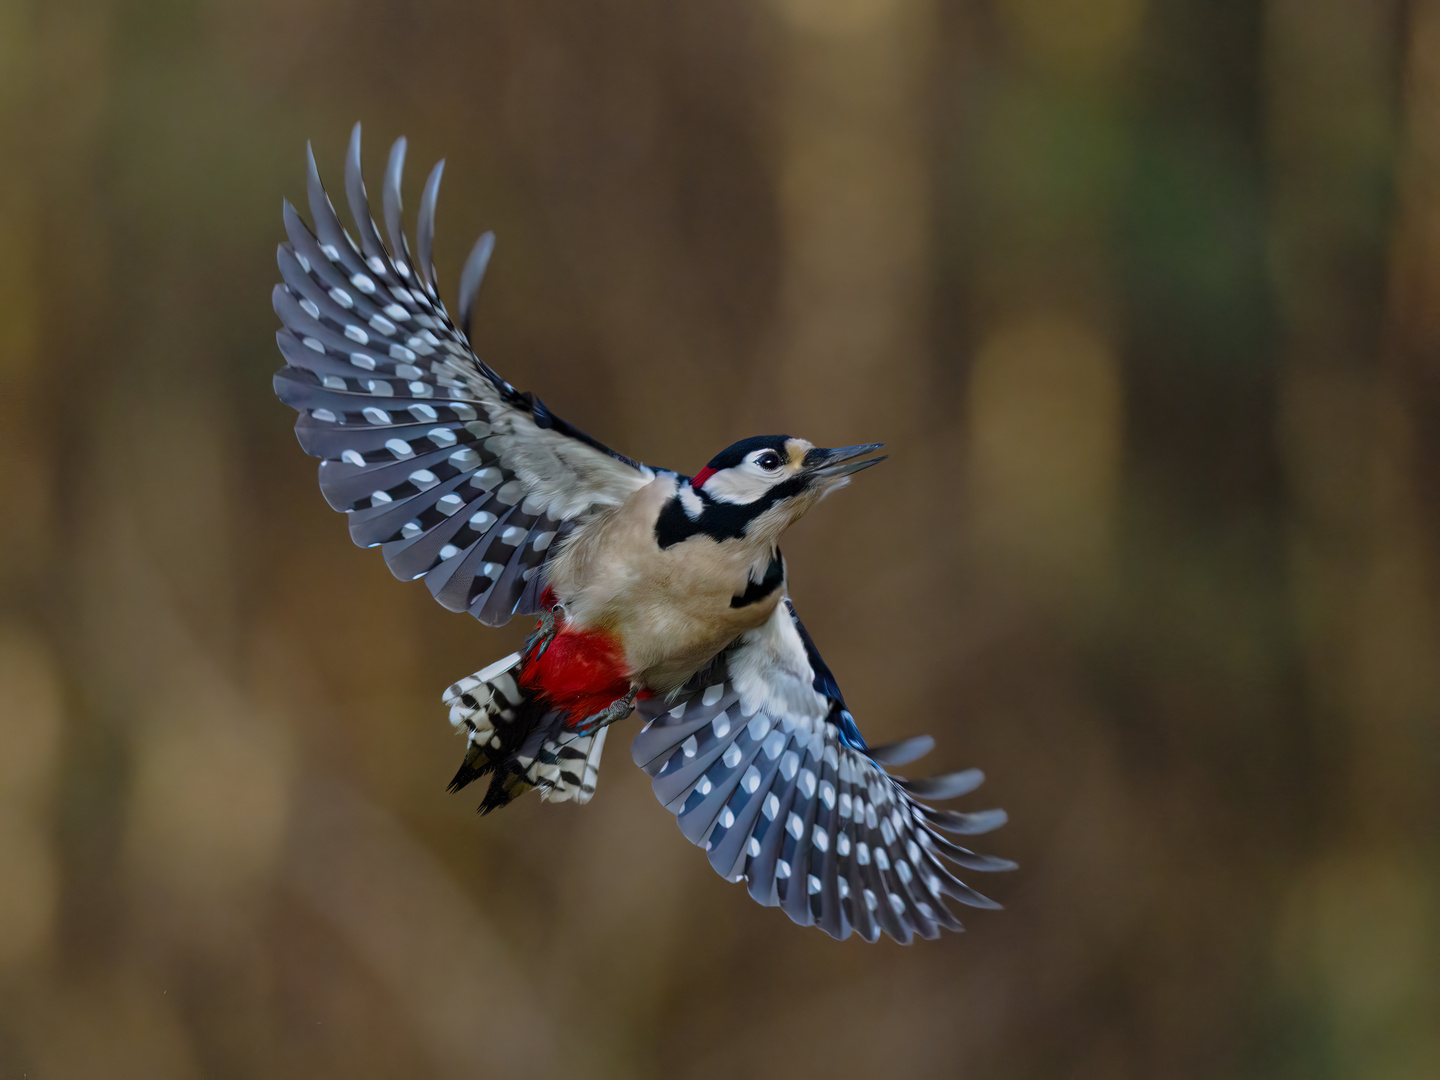 Great Spotted Woodpecker in Flight